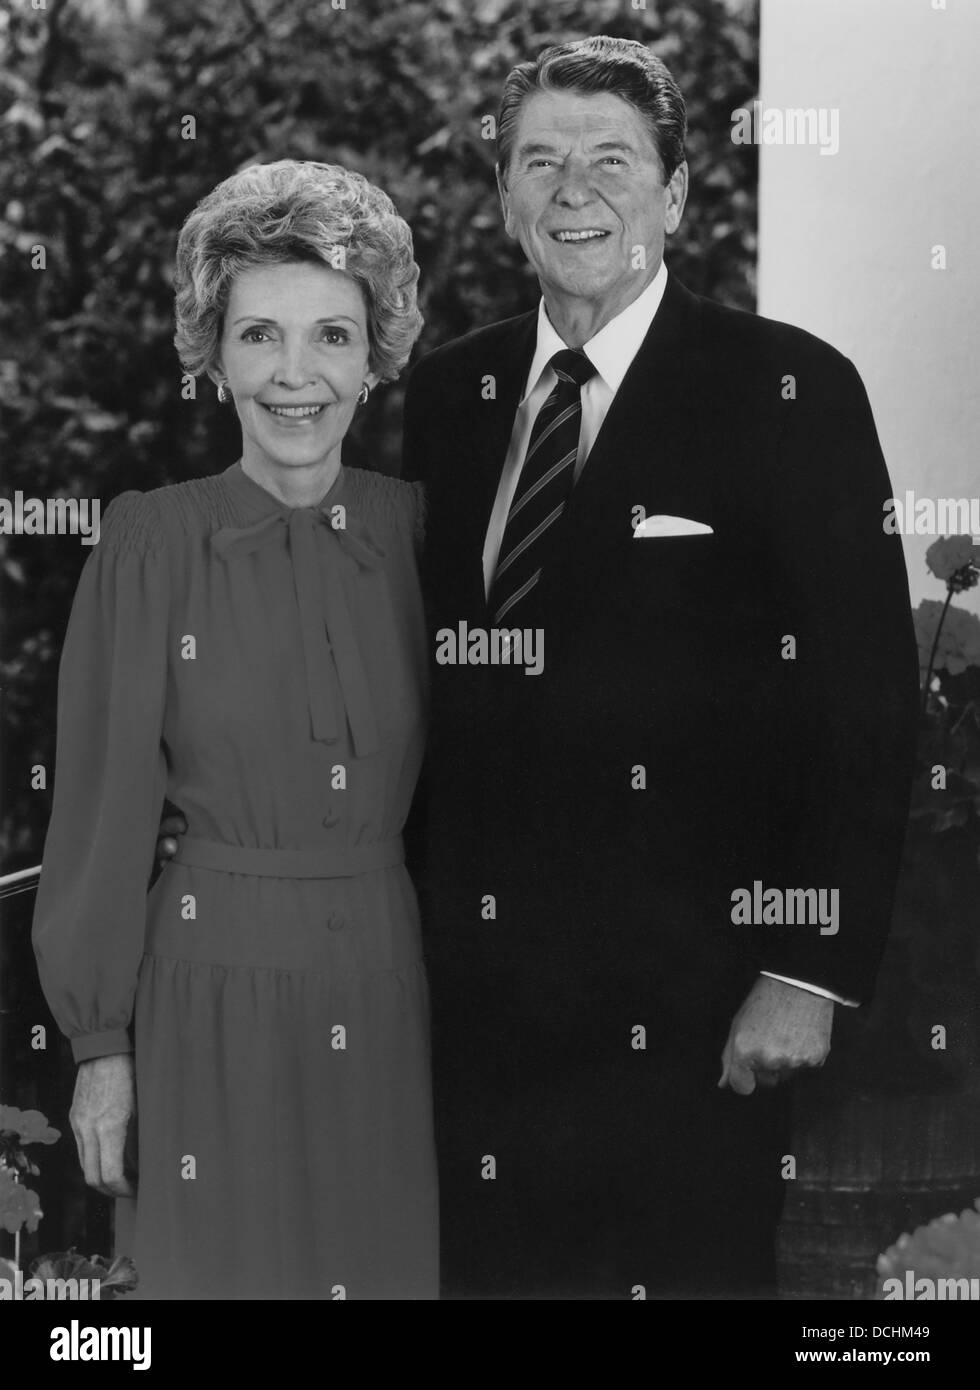 L'histoire de l'Amérique restaurés numériquement photo du président Ronald Reagan et son épouse Nancy. Banque D'Images